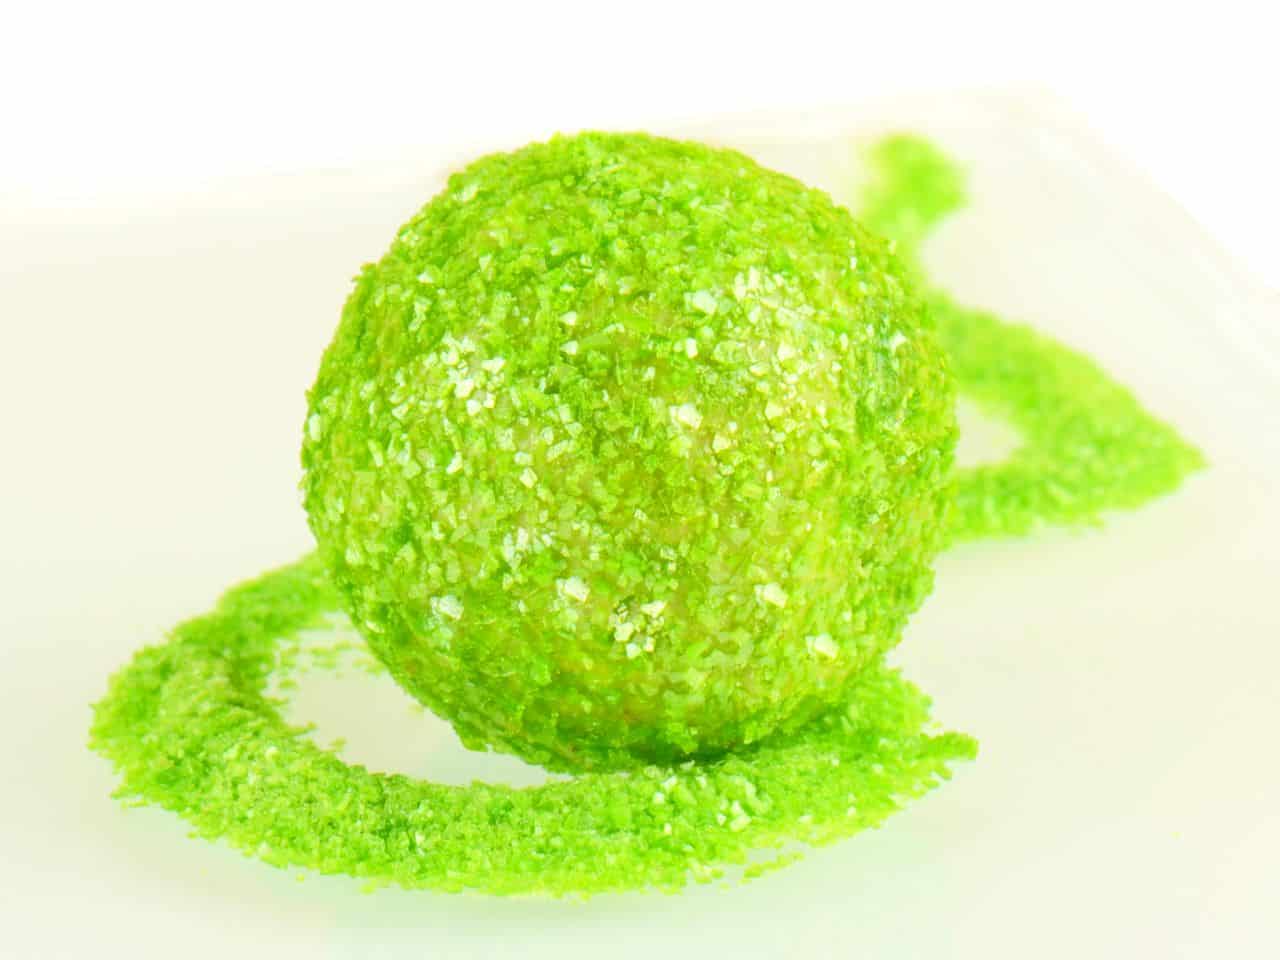 Glitzerpulver essbar apple green - apfelgrün 5 g V01